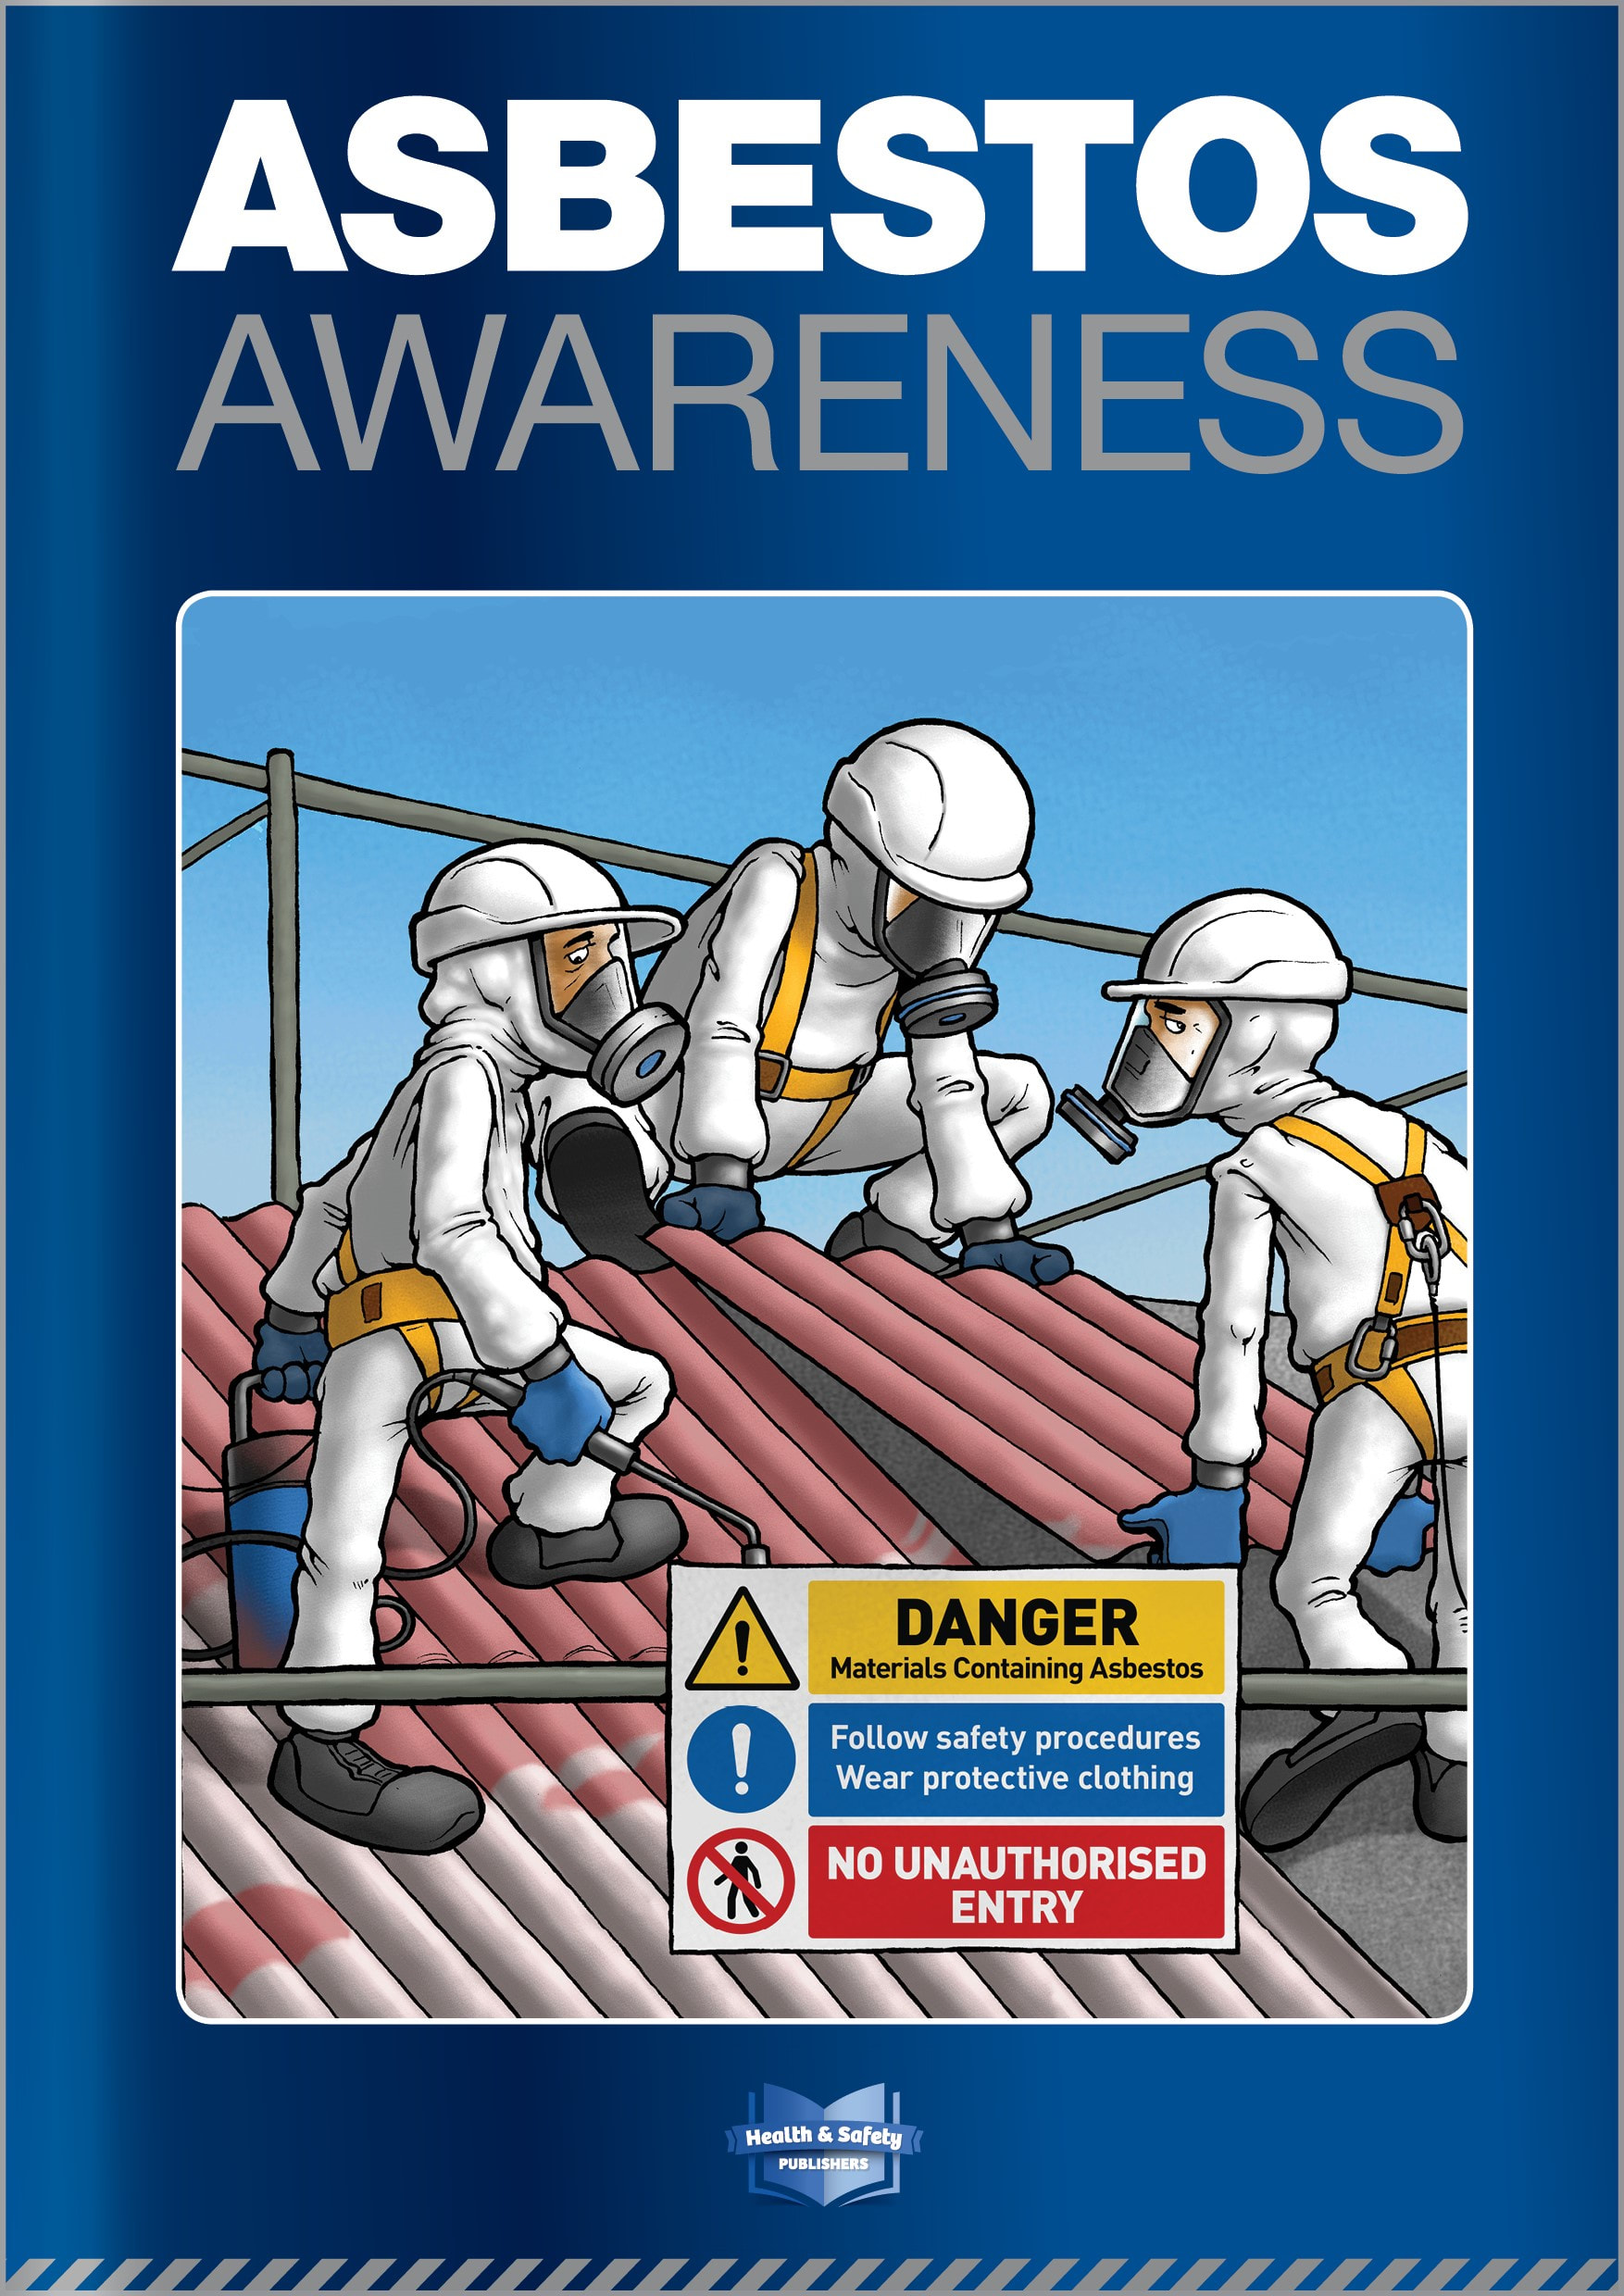 Asbestos awareness guidebook